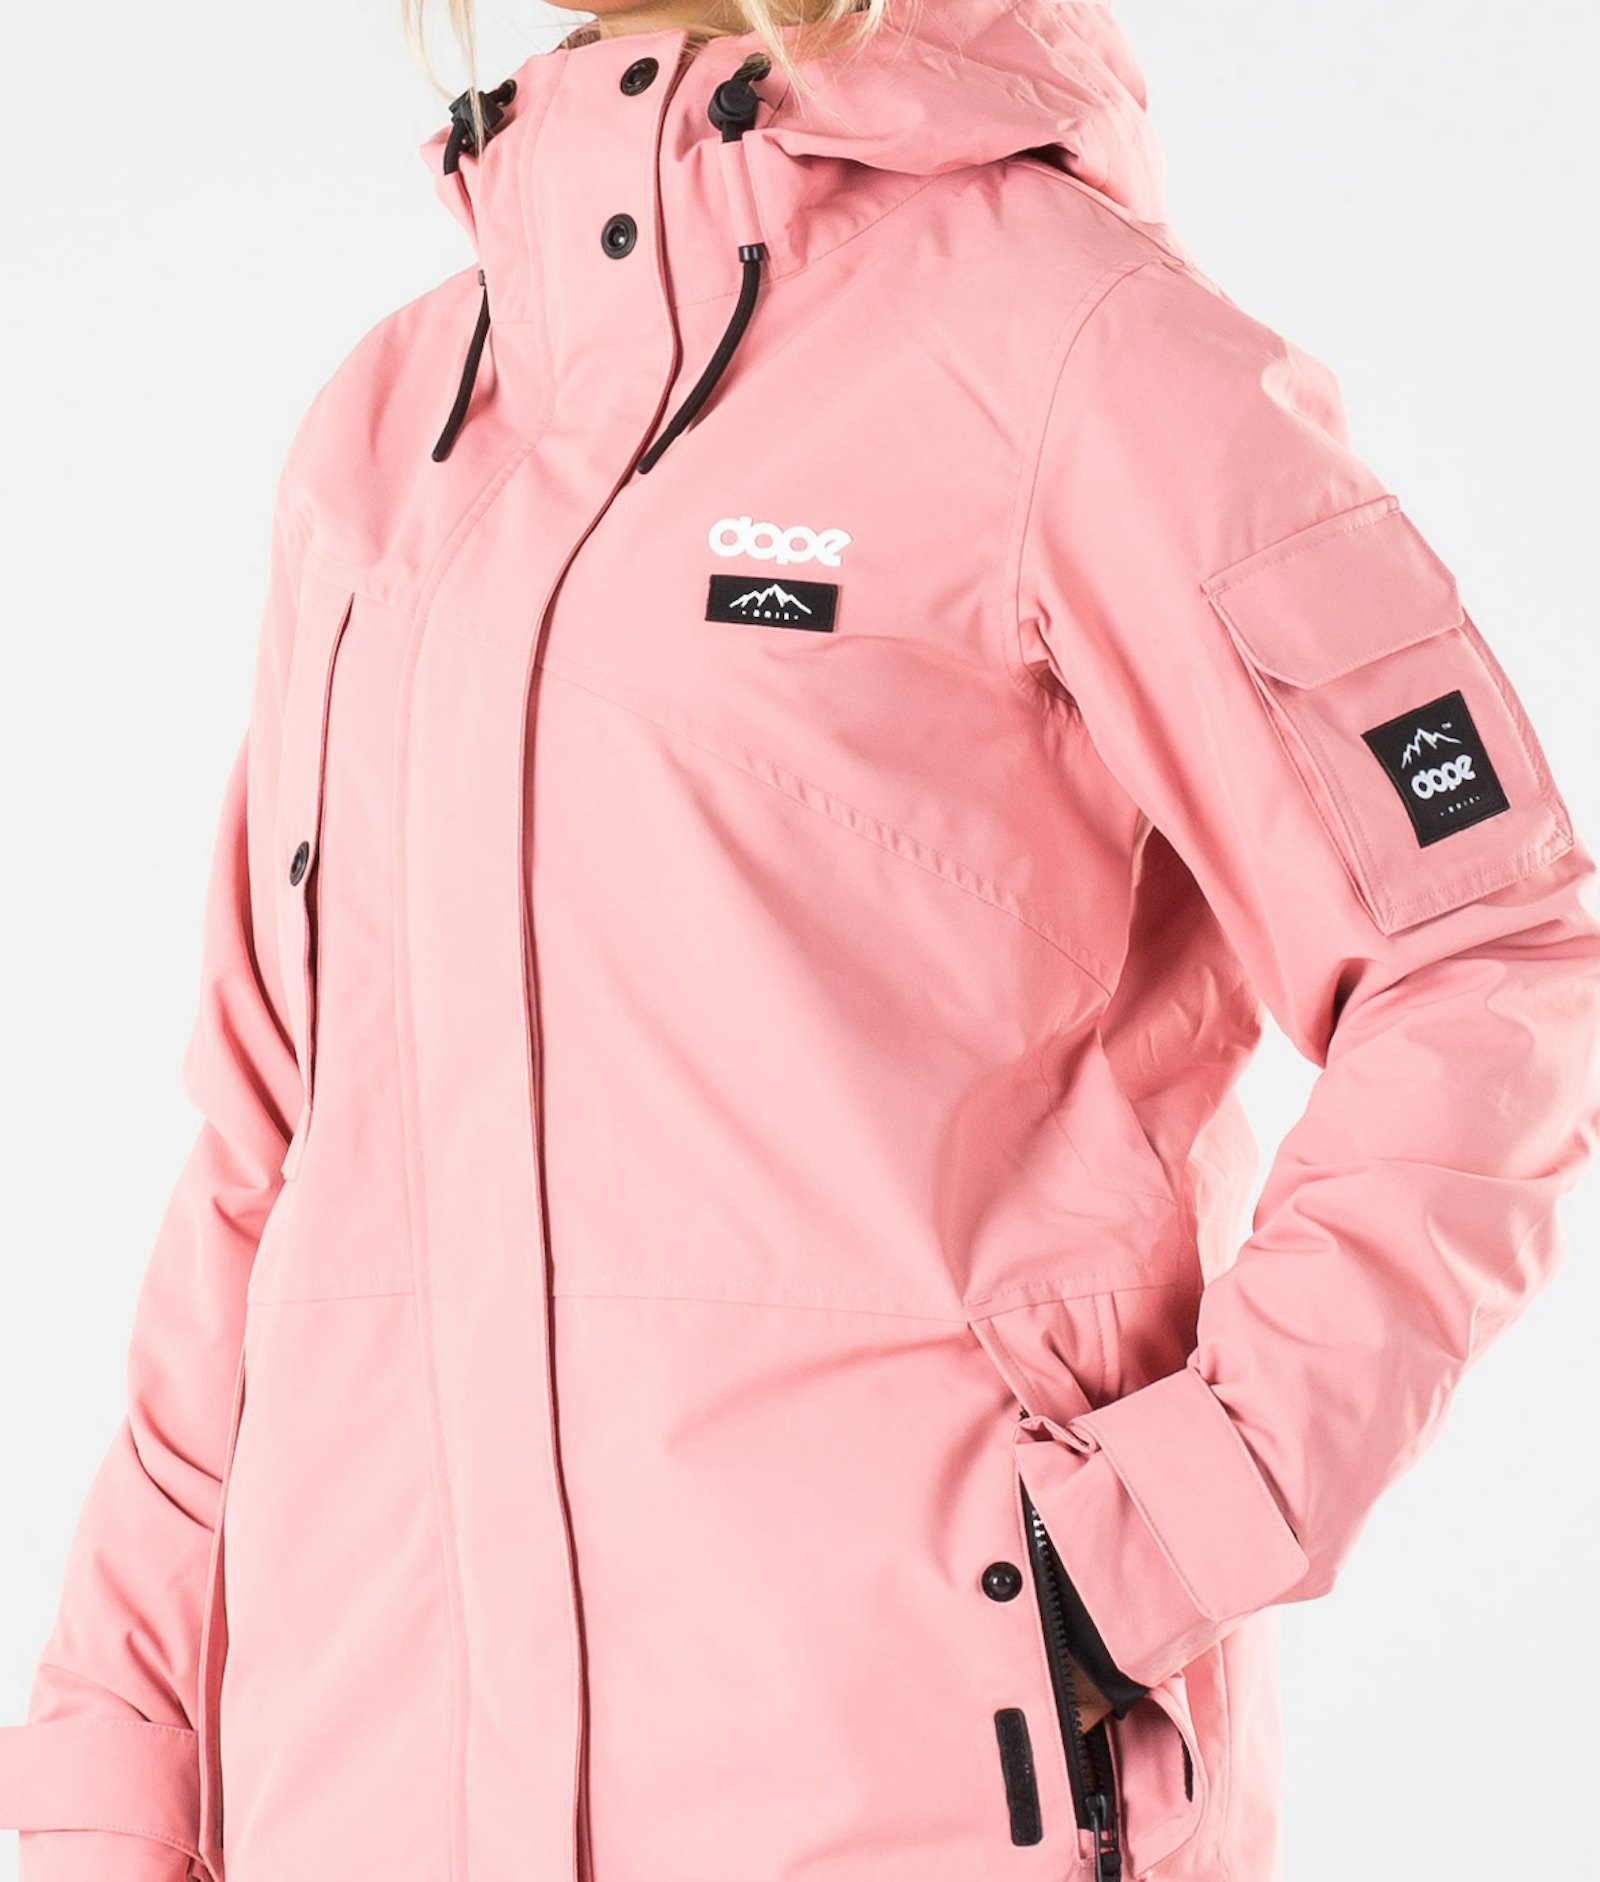 Adept W 2019 Snowboardjacke Damen Pink